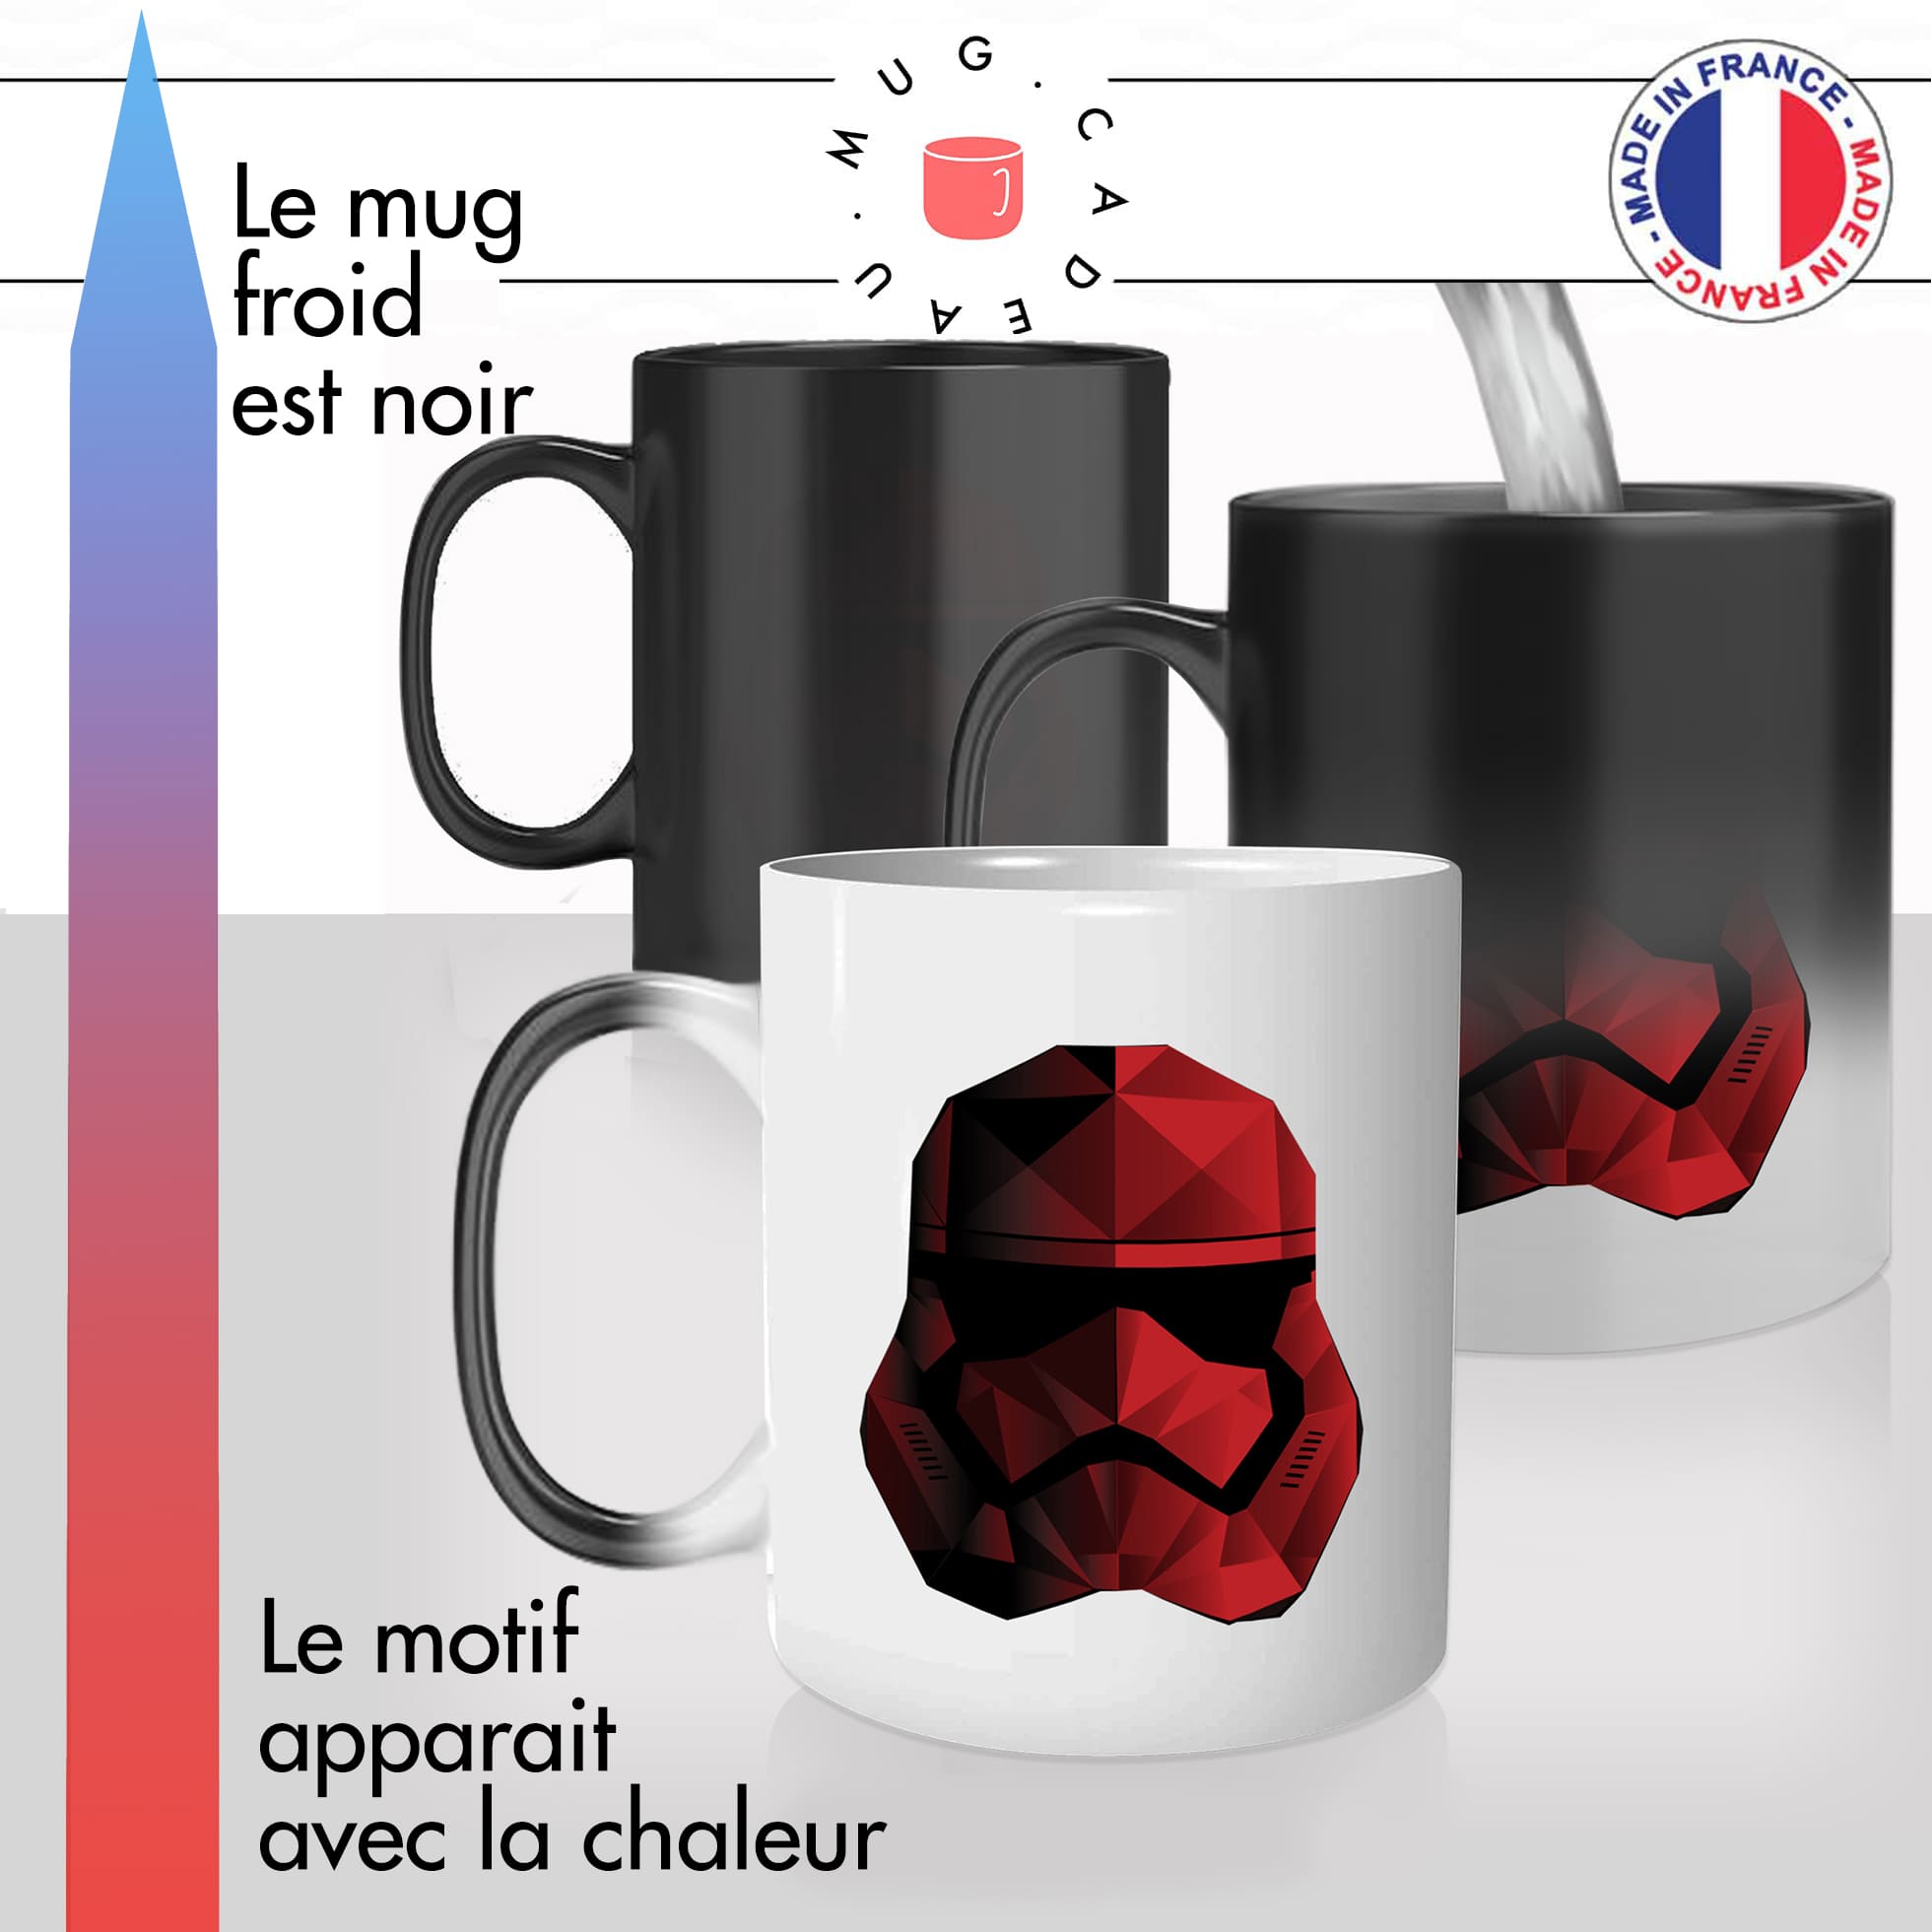 mug magique thermoréactif thermo chauffant personnalisé starwars trooper rouge casque soldat idée cadeau fun cool original